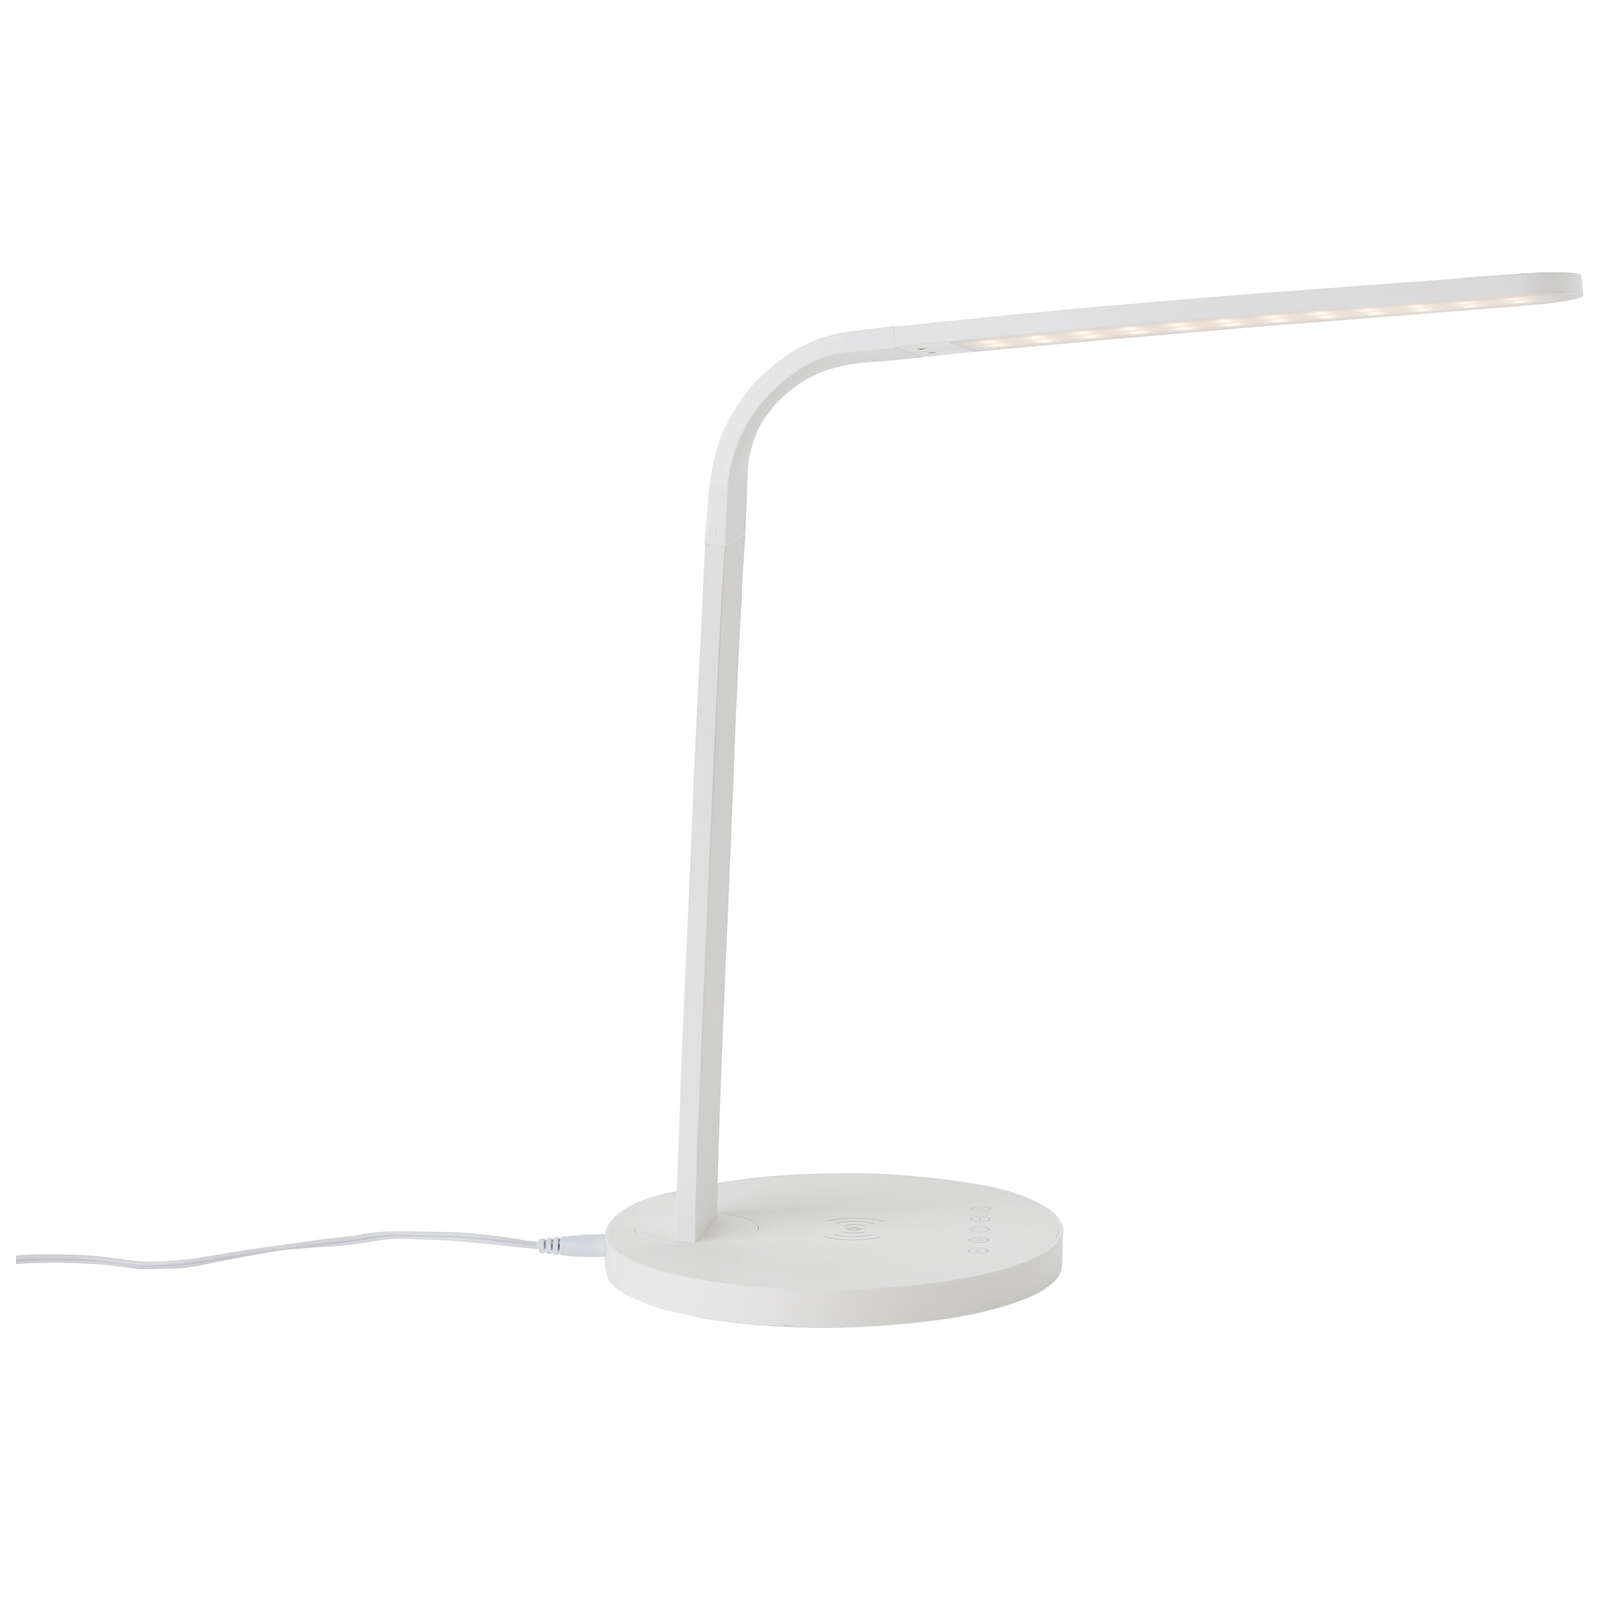             Lampe de table en plastique - Jannes - Blanc
        